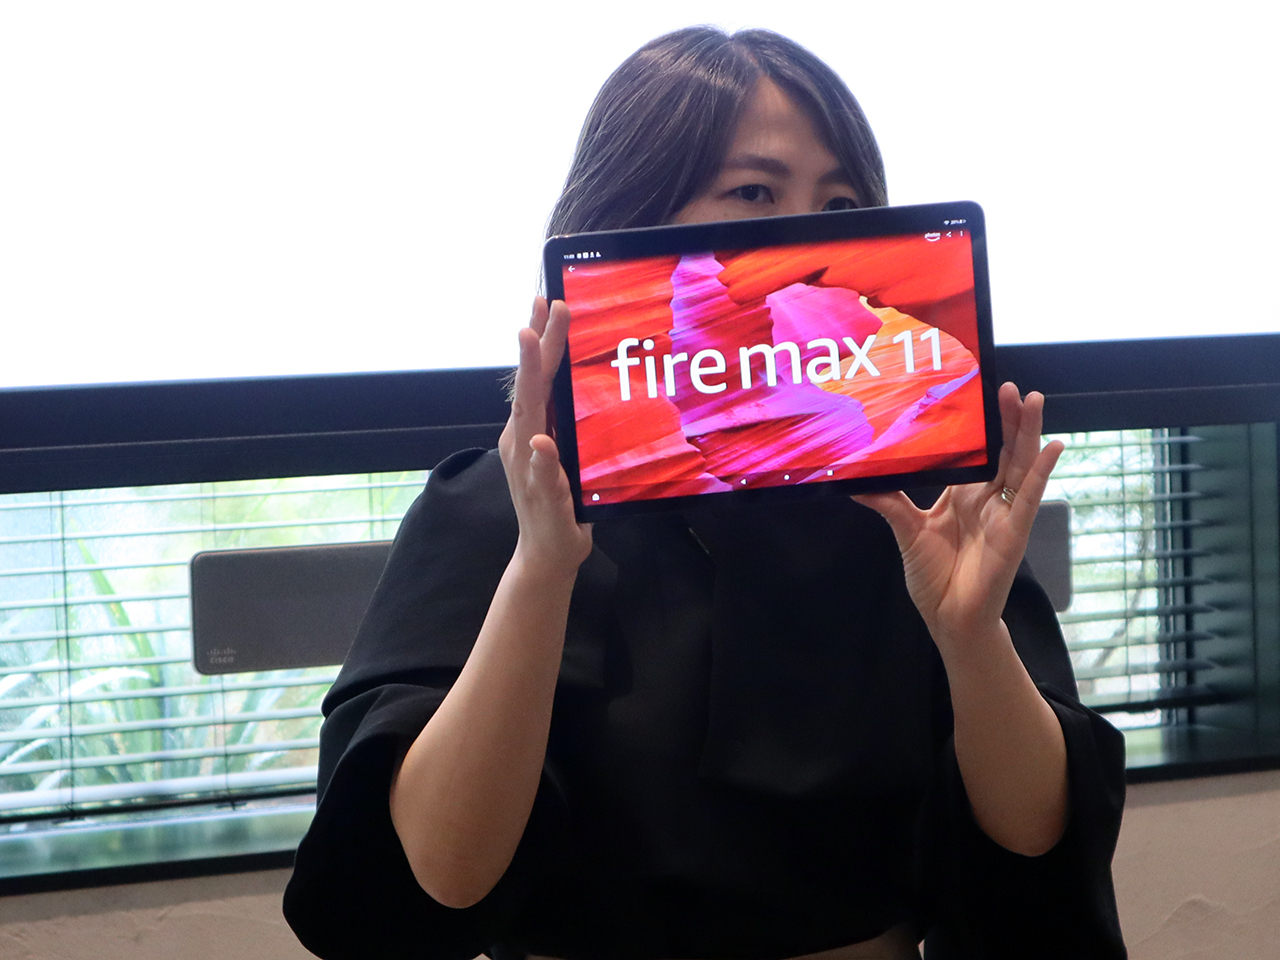 アマゾン、11インチの大画面タブレット「Fire Max 11」--初の専用